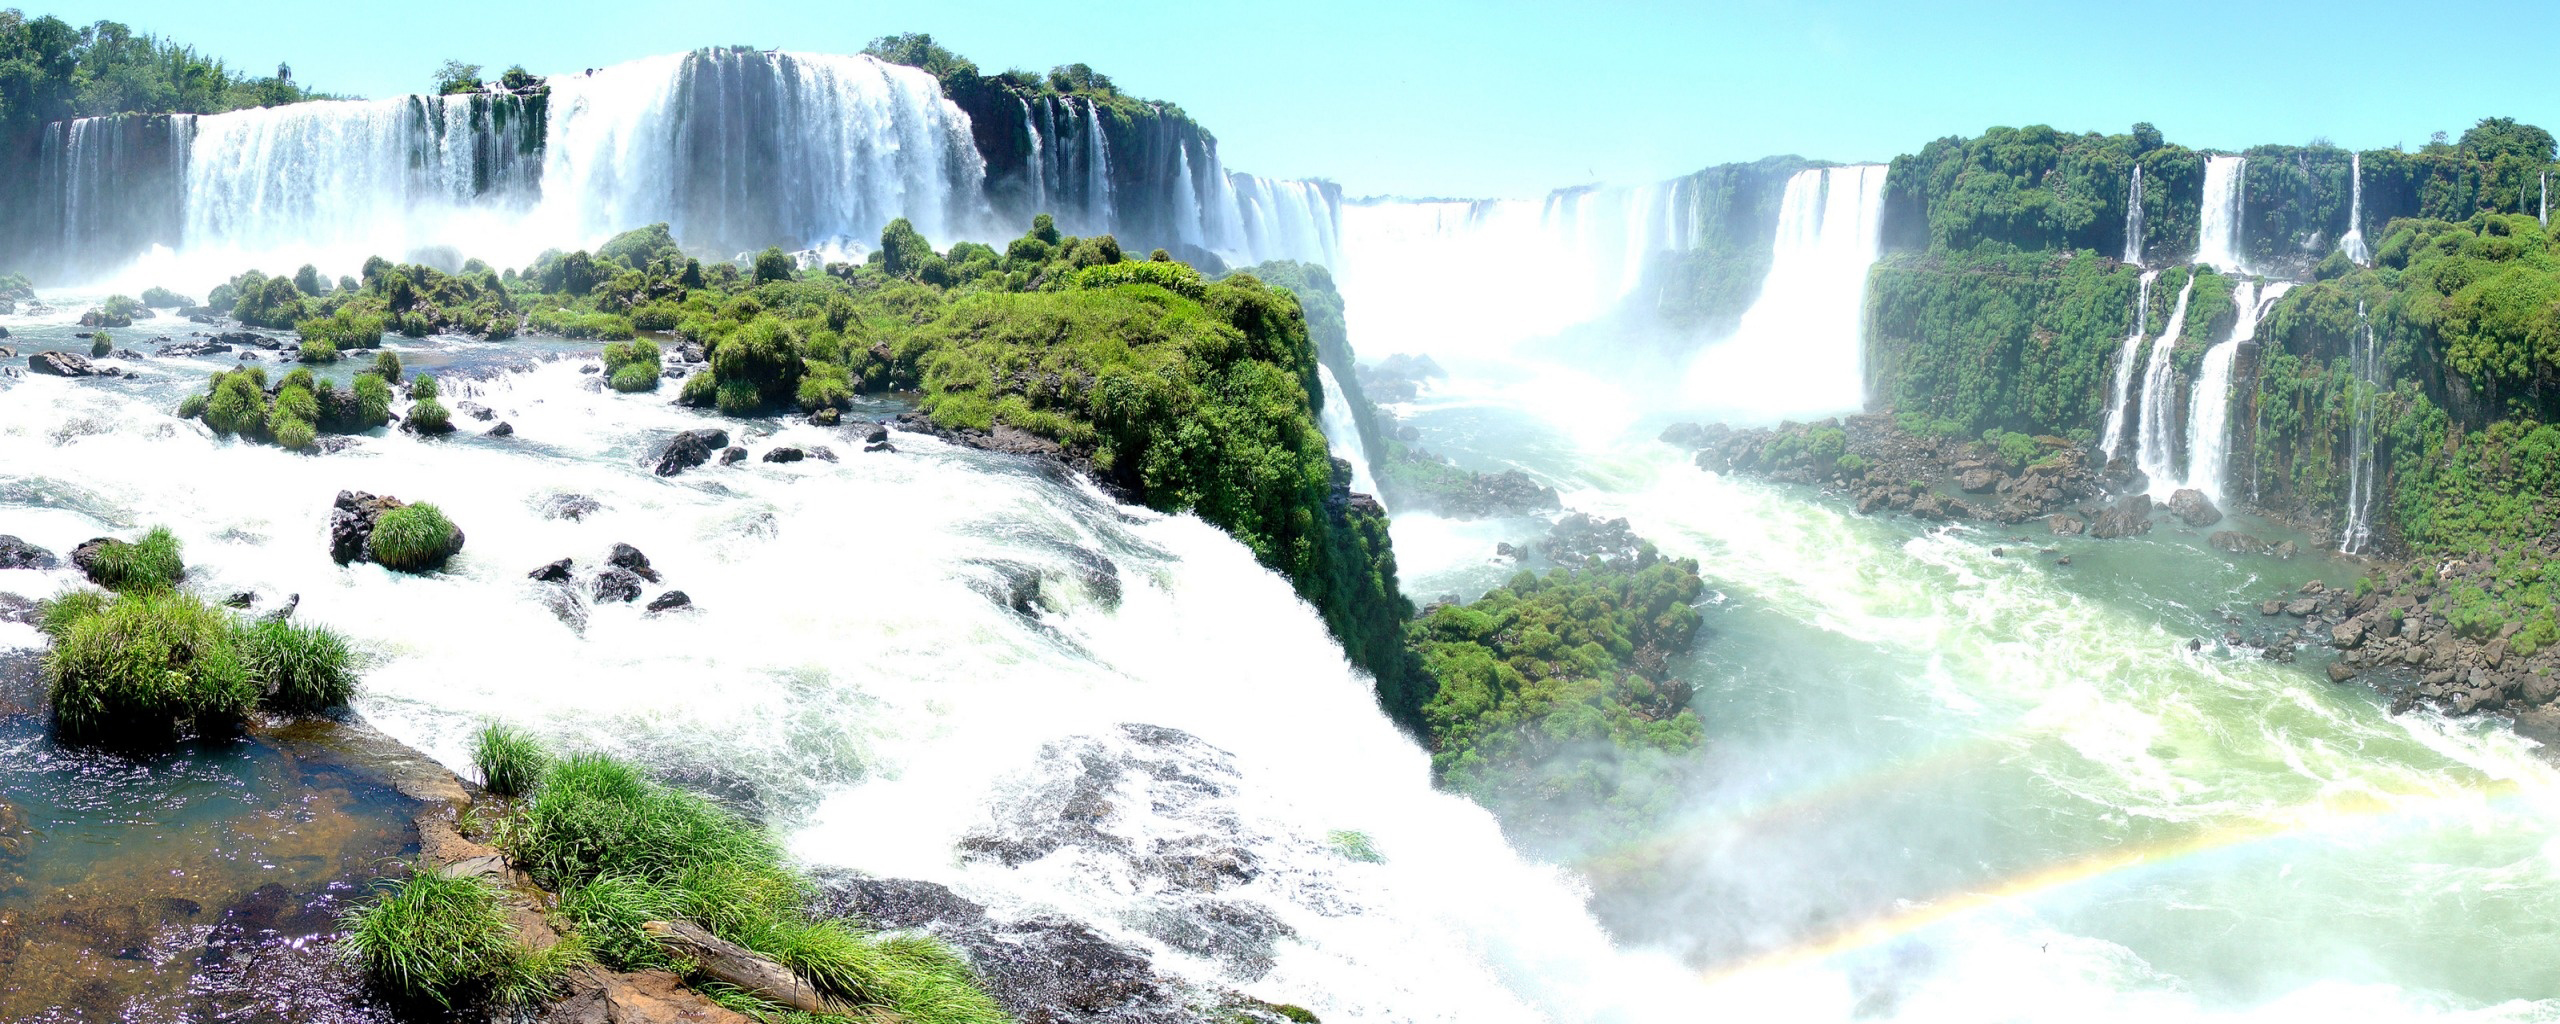 Iguassu Falls Panorama facebook covers photo